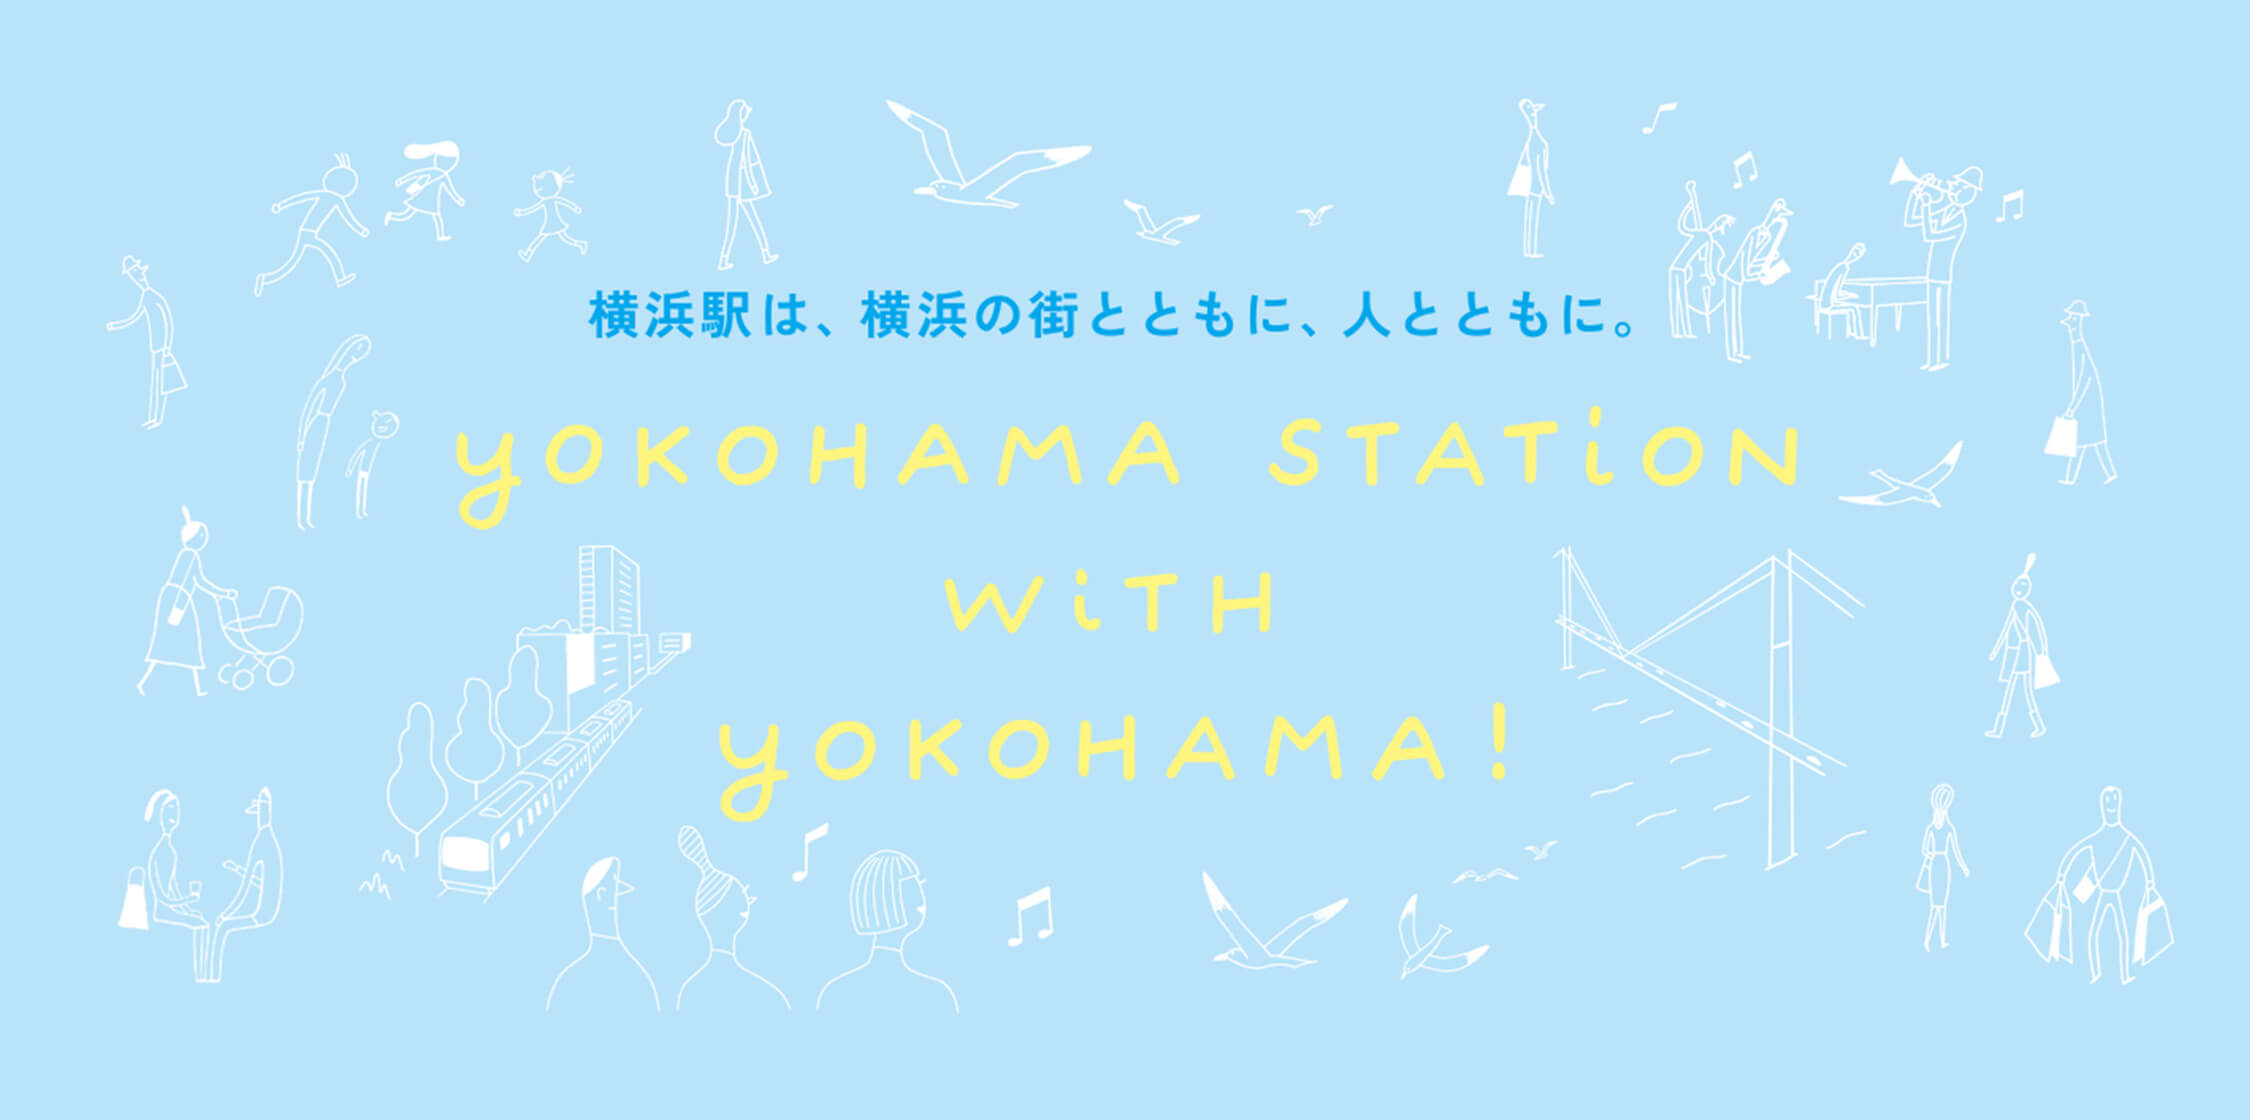 横浜駅は、横浜の街とともに、人とともに。YOKOHAMA STATION WITH YOKOHAMA